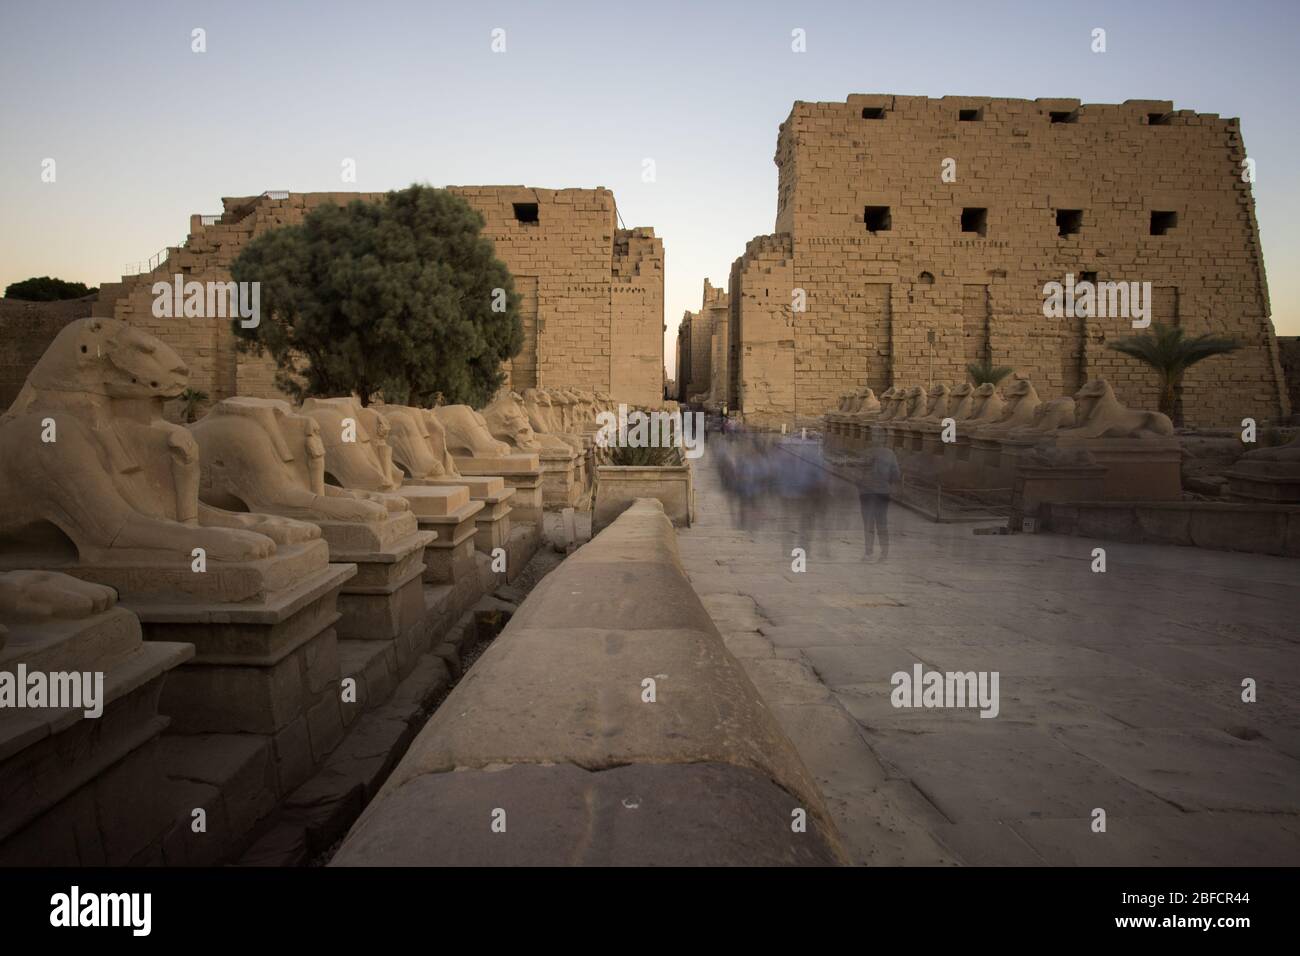 Les touristes se bousculaient à l'entrée du temple de Karnak et de la Cité d'Amun-Re, à la périphérie de Louxor, en Égypte. Banque D'Images